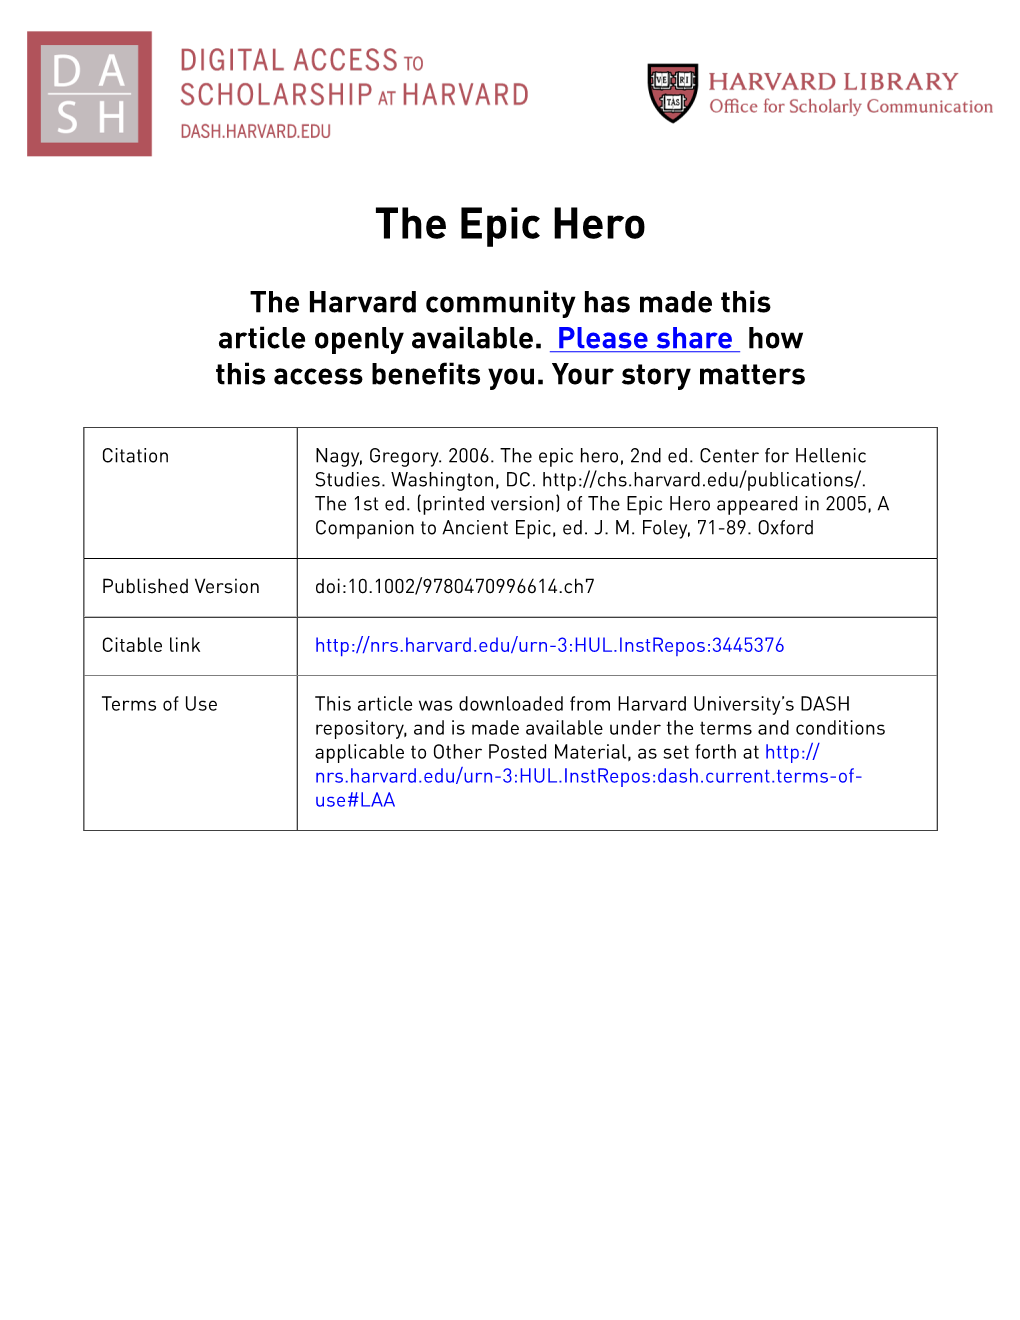 Nagy Epic Hero Sourcetext 20090831